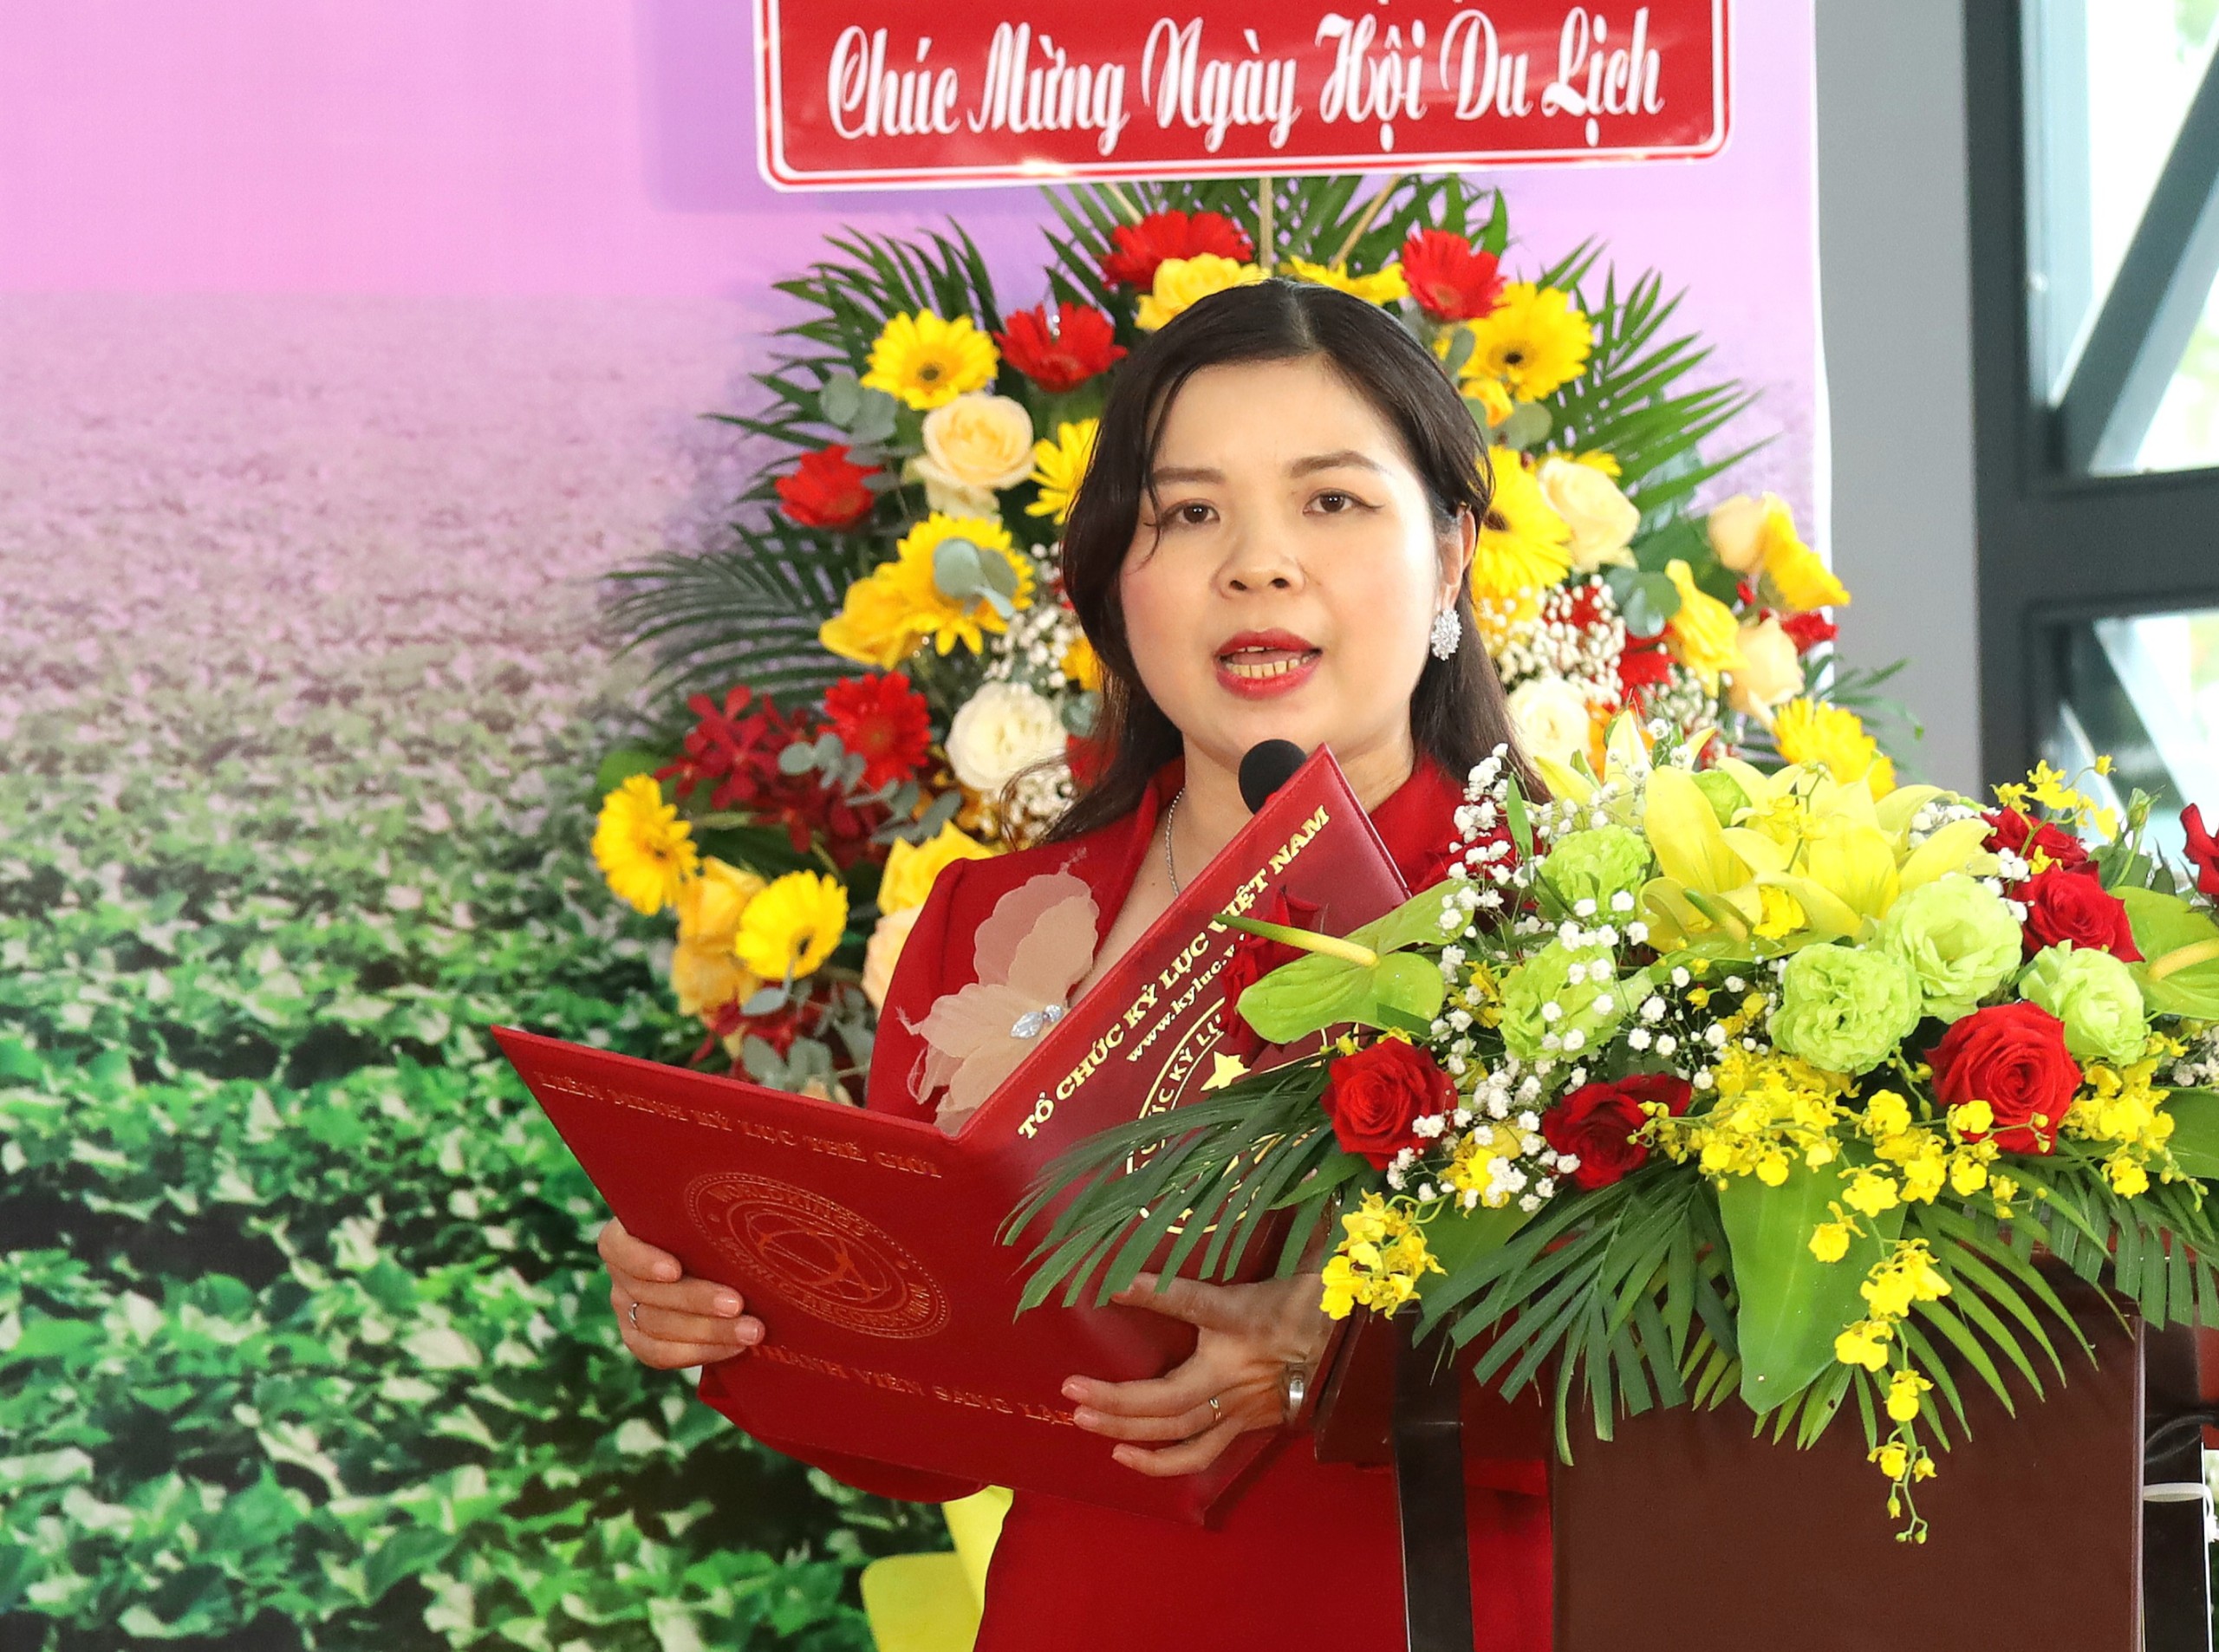 Bà Nguyễn Thị Quỳnh Ngọc – Tổng thư ký Tổ chức Kỷ lục Việt Nam (VietKings) đại diện công bố Quyết định xác lập Kỷ lục Việt Nam.